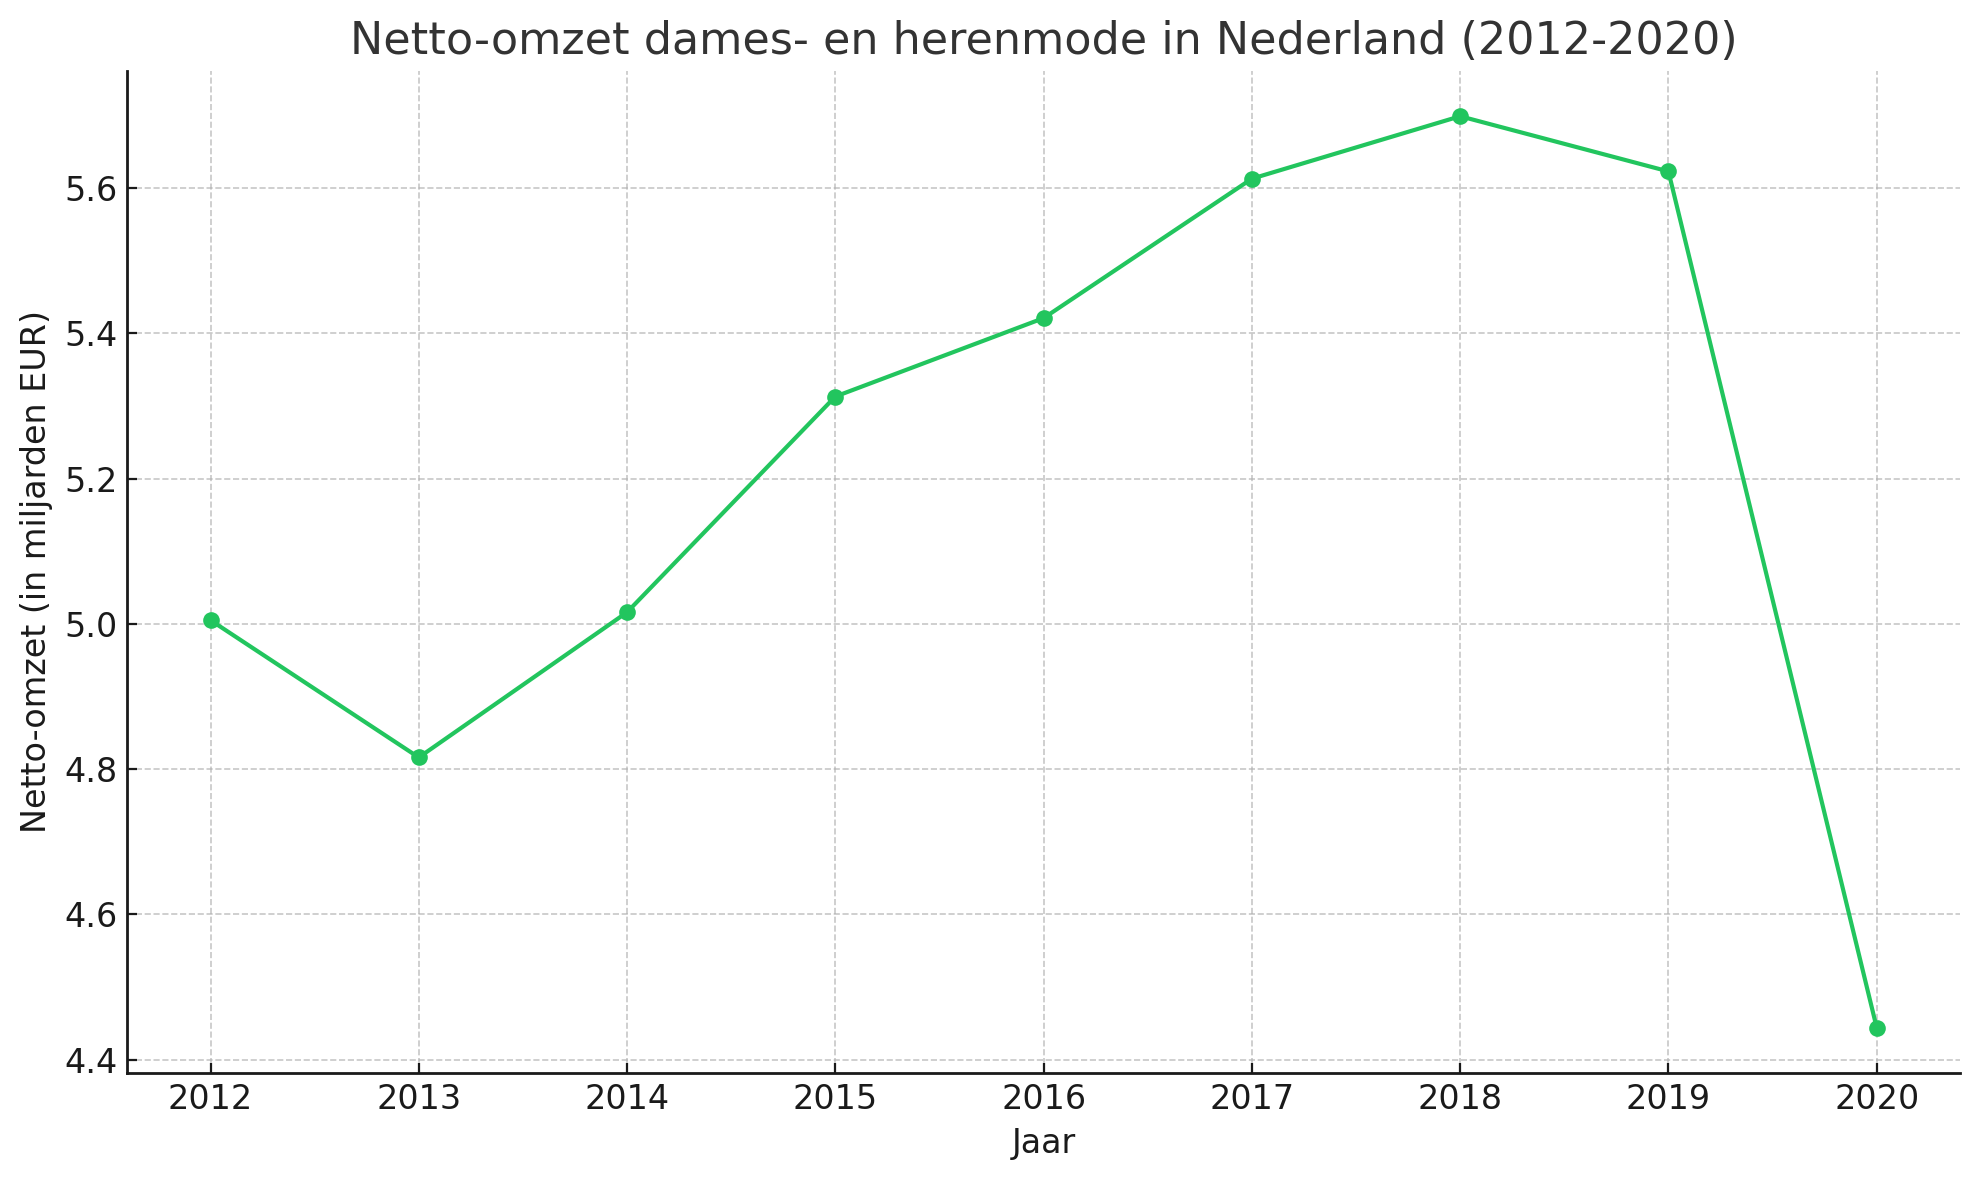 Netto omzet dames en herenmode in Nederland